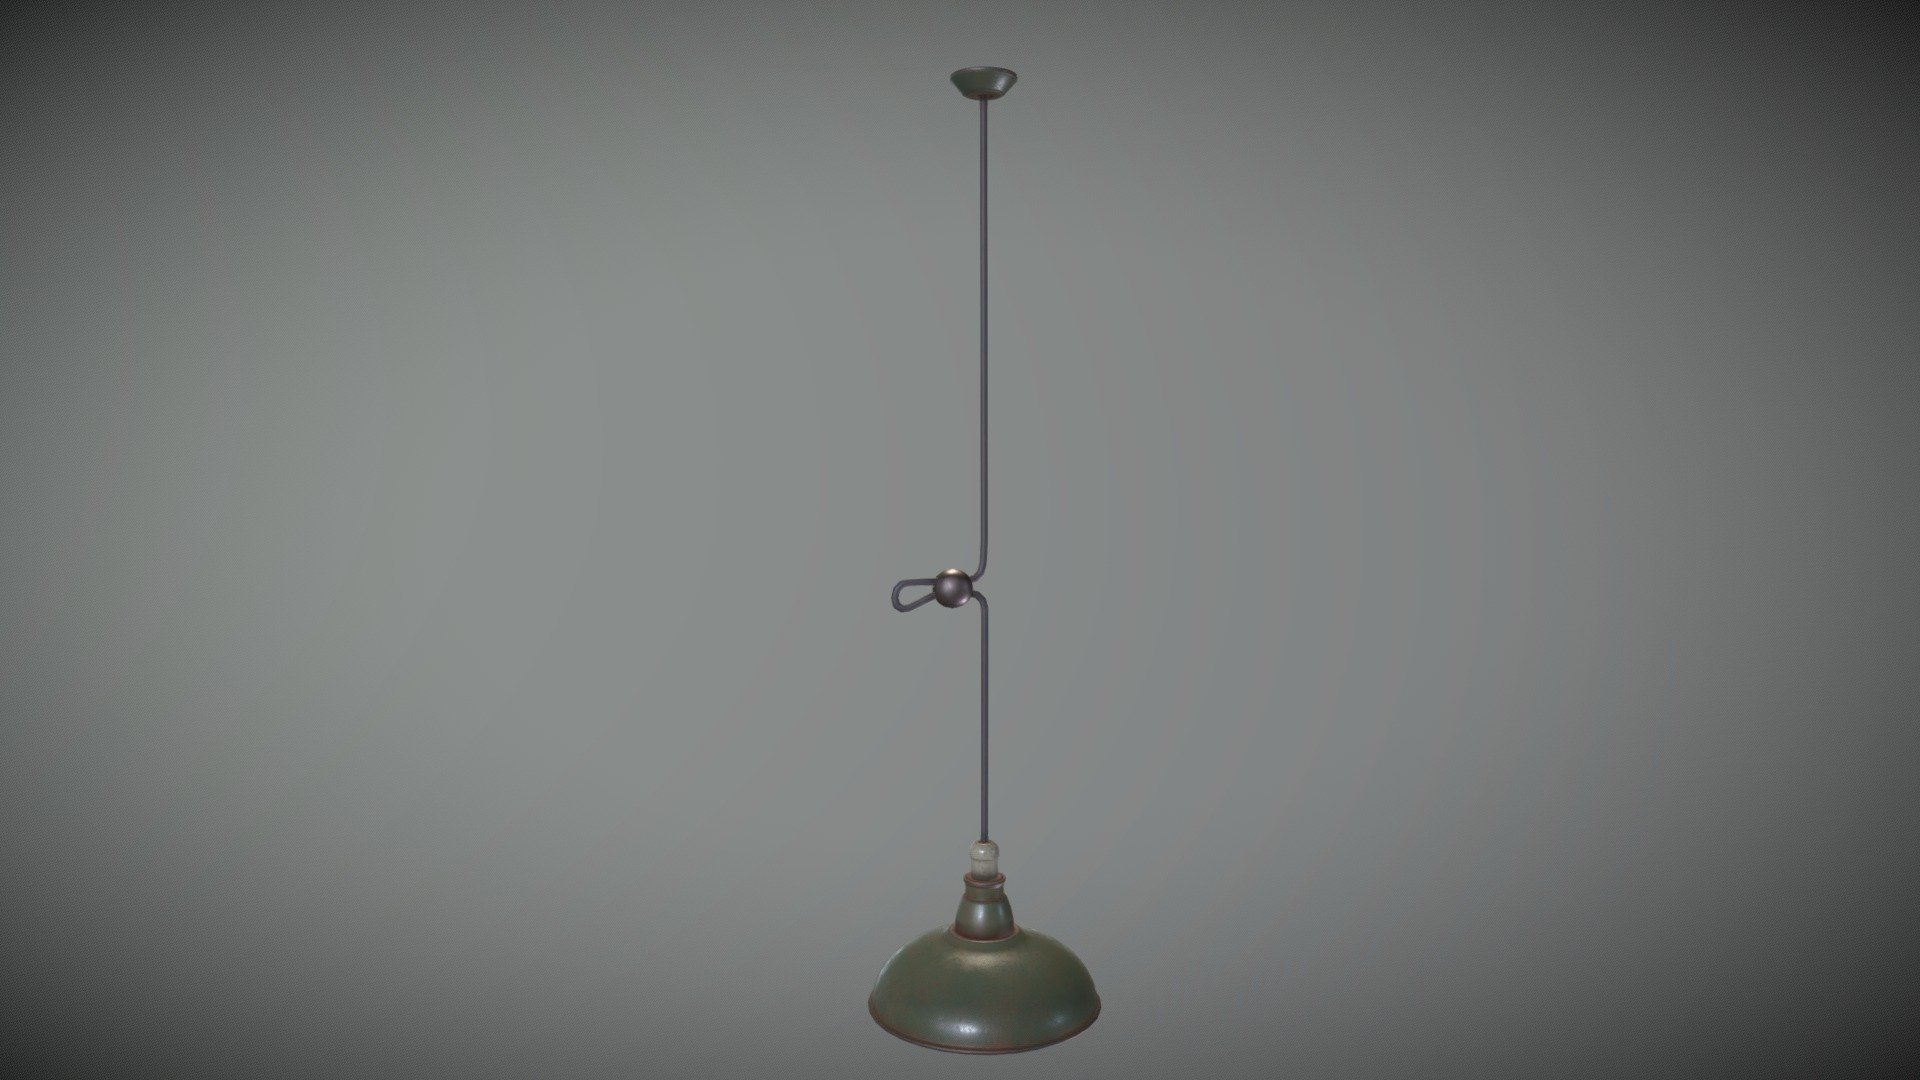 Game Art: Vintage Ceiling Lamp